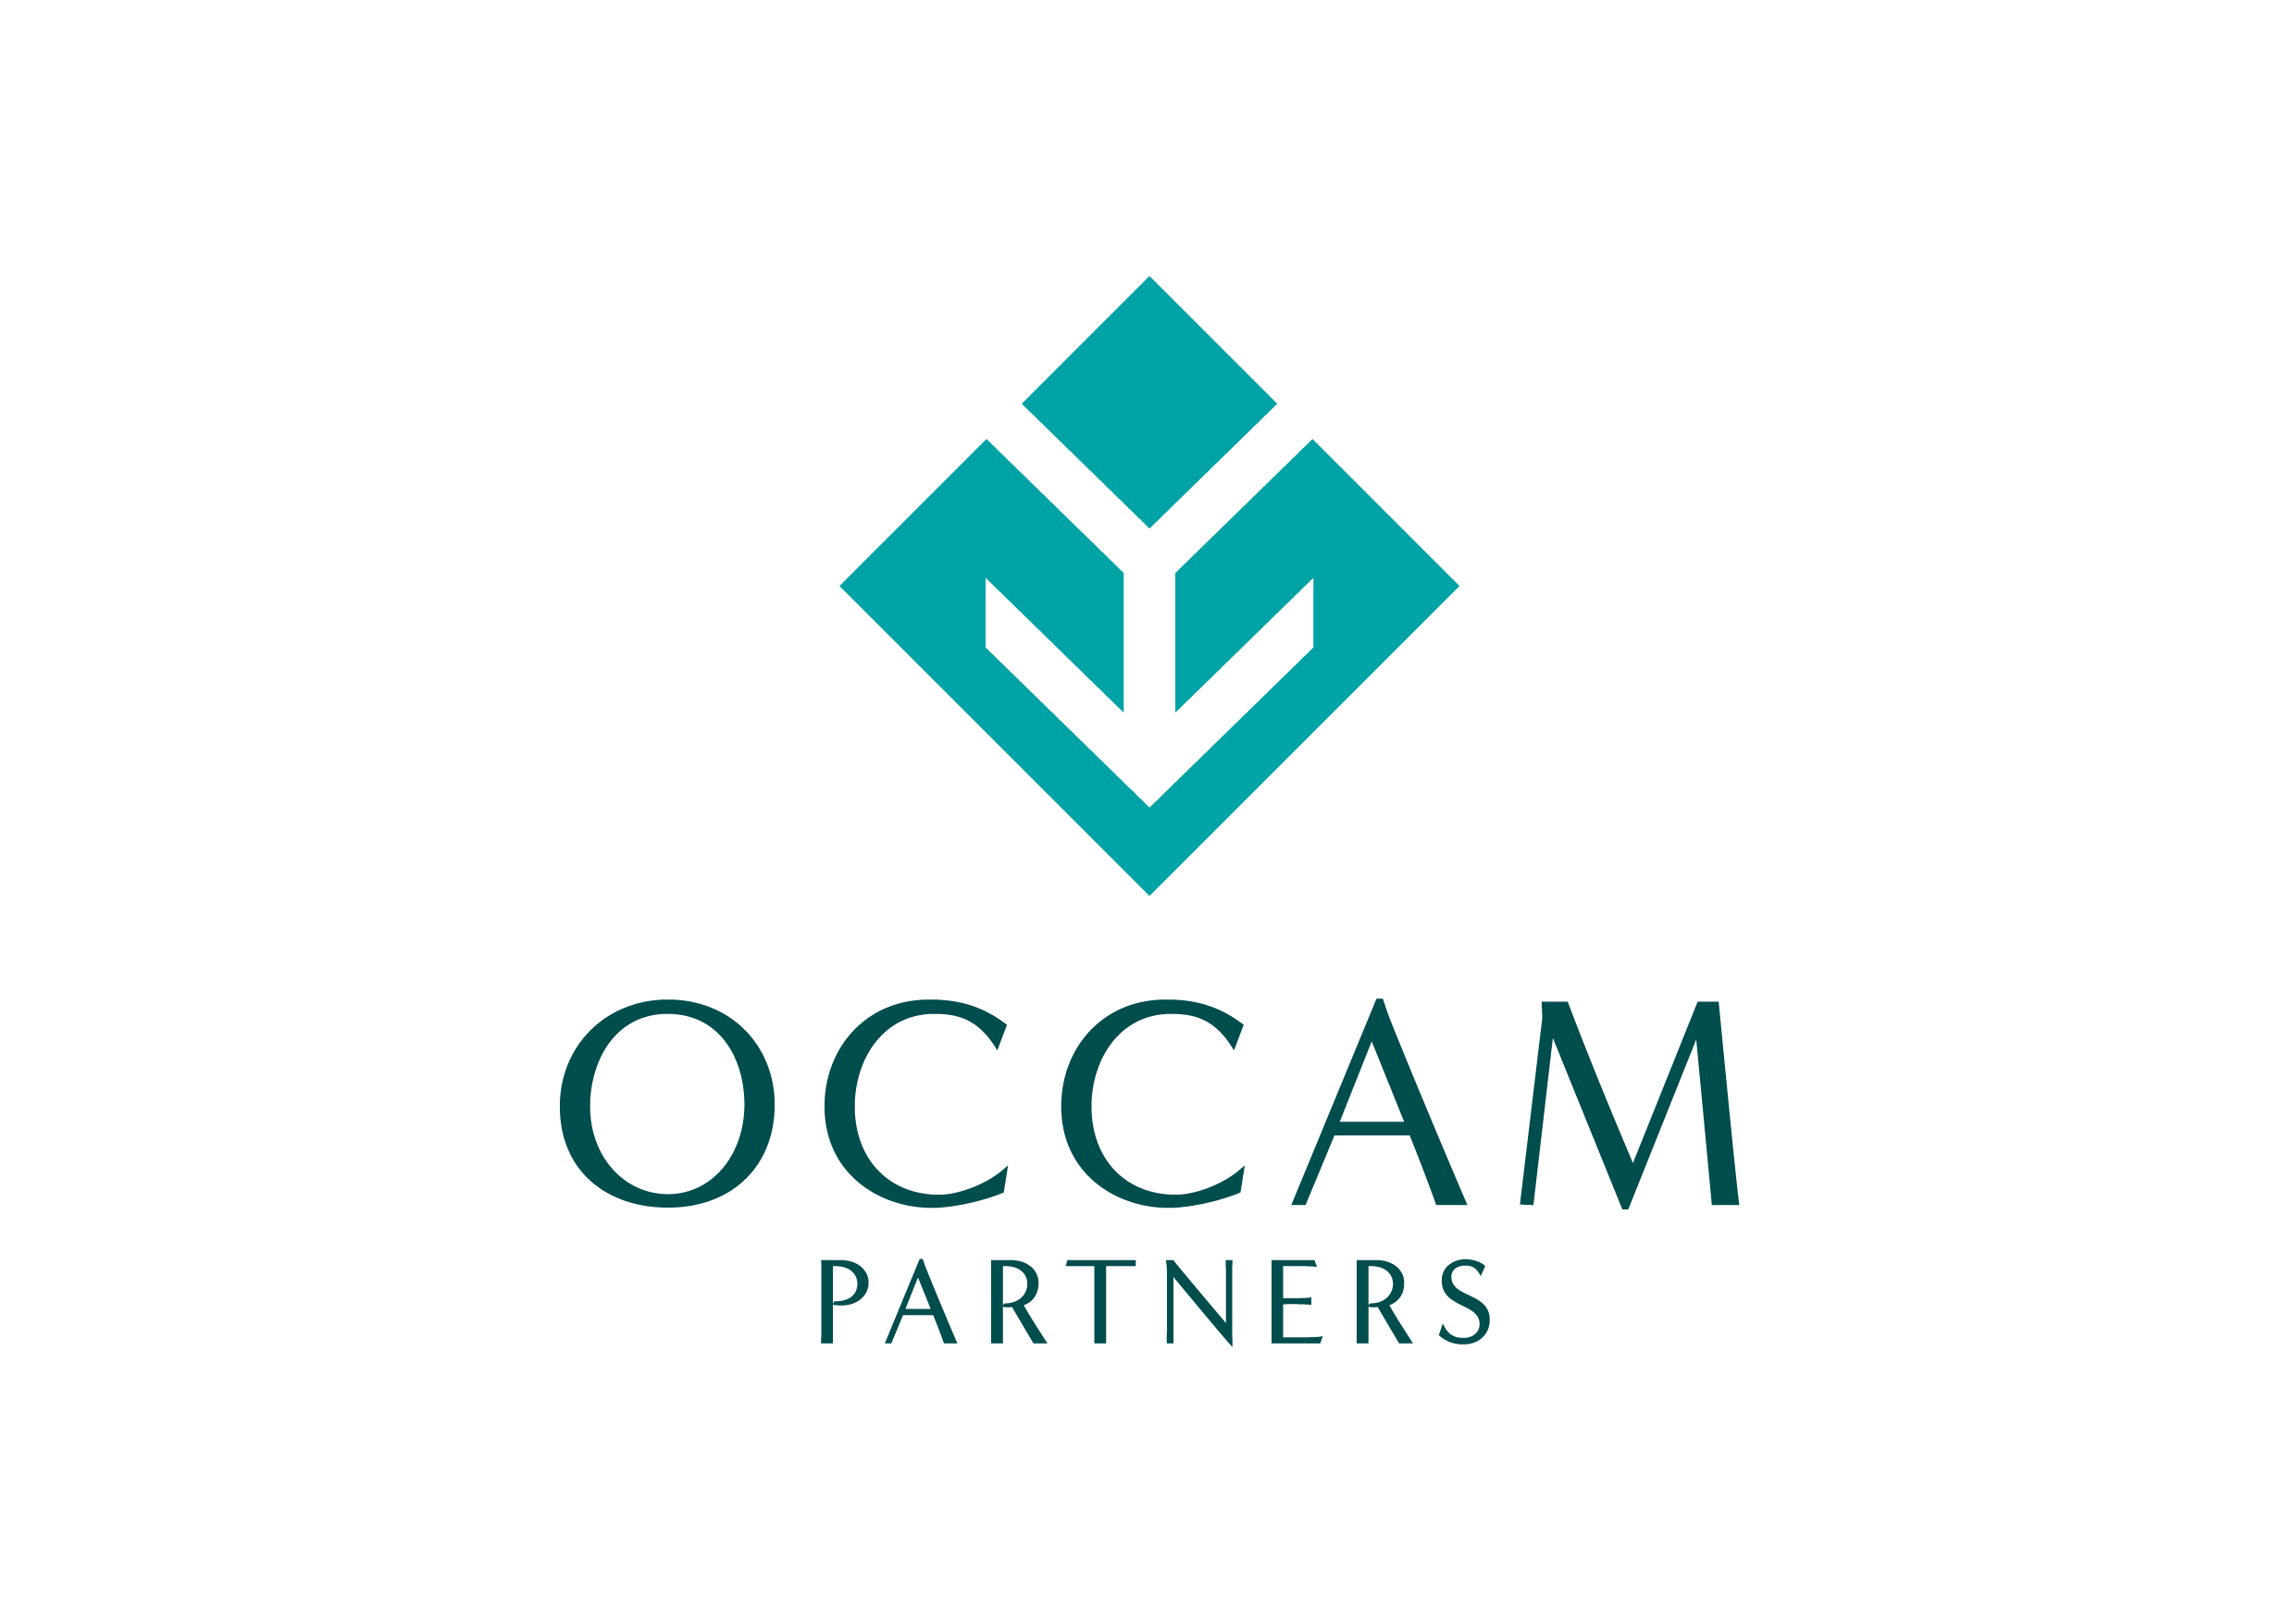 Occam Partners